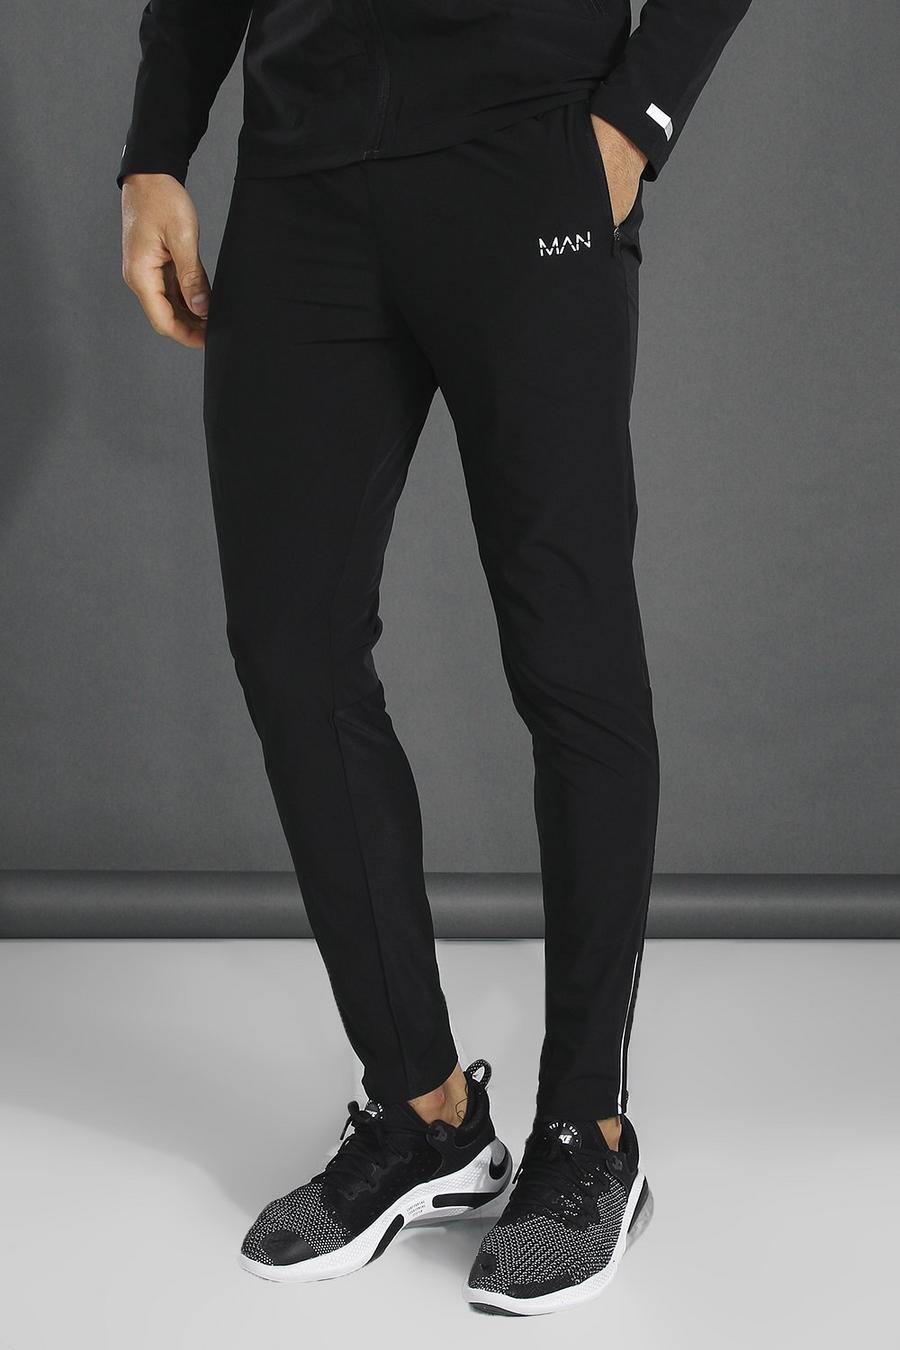 שחור מכנסי טרנינג ספורטיביים קלילים חלקים עם כיתוב Man